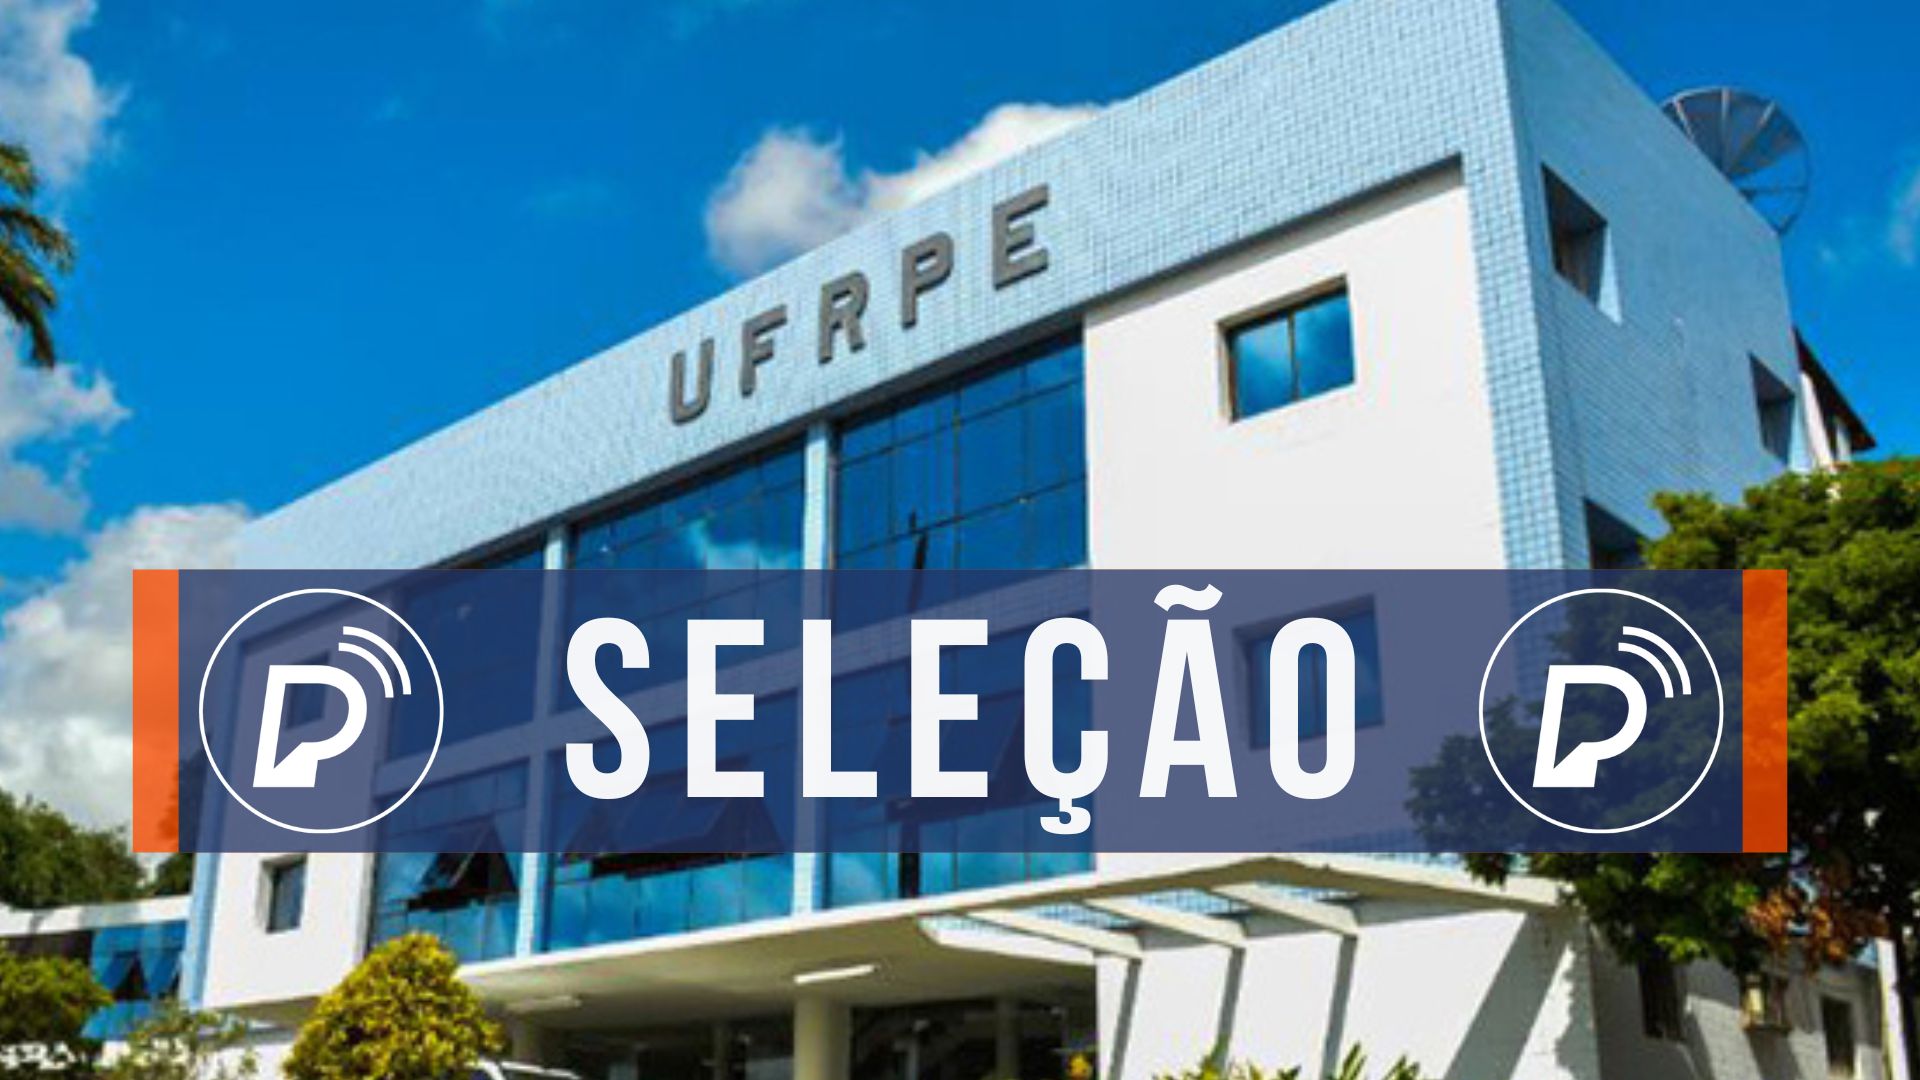 Processo seletivo da UFRPE. Foto: Divulgação